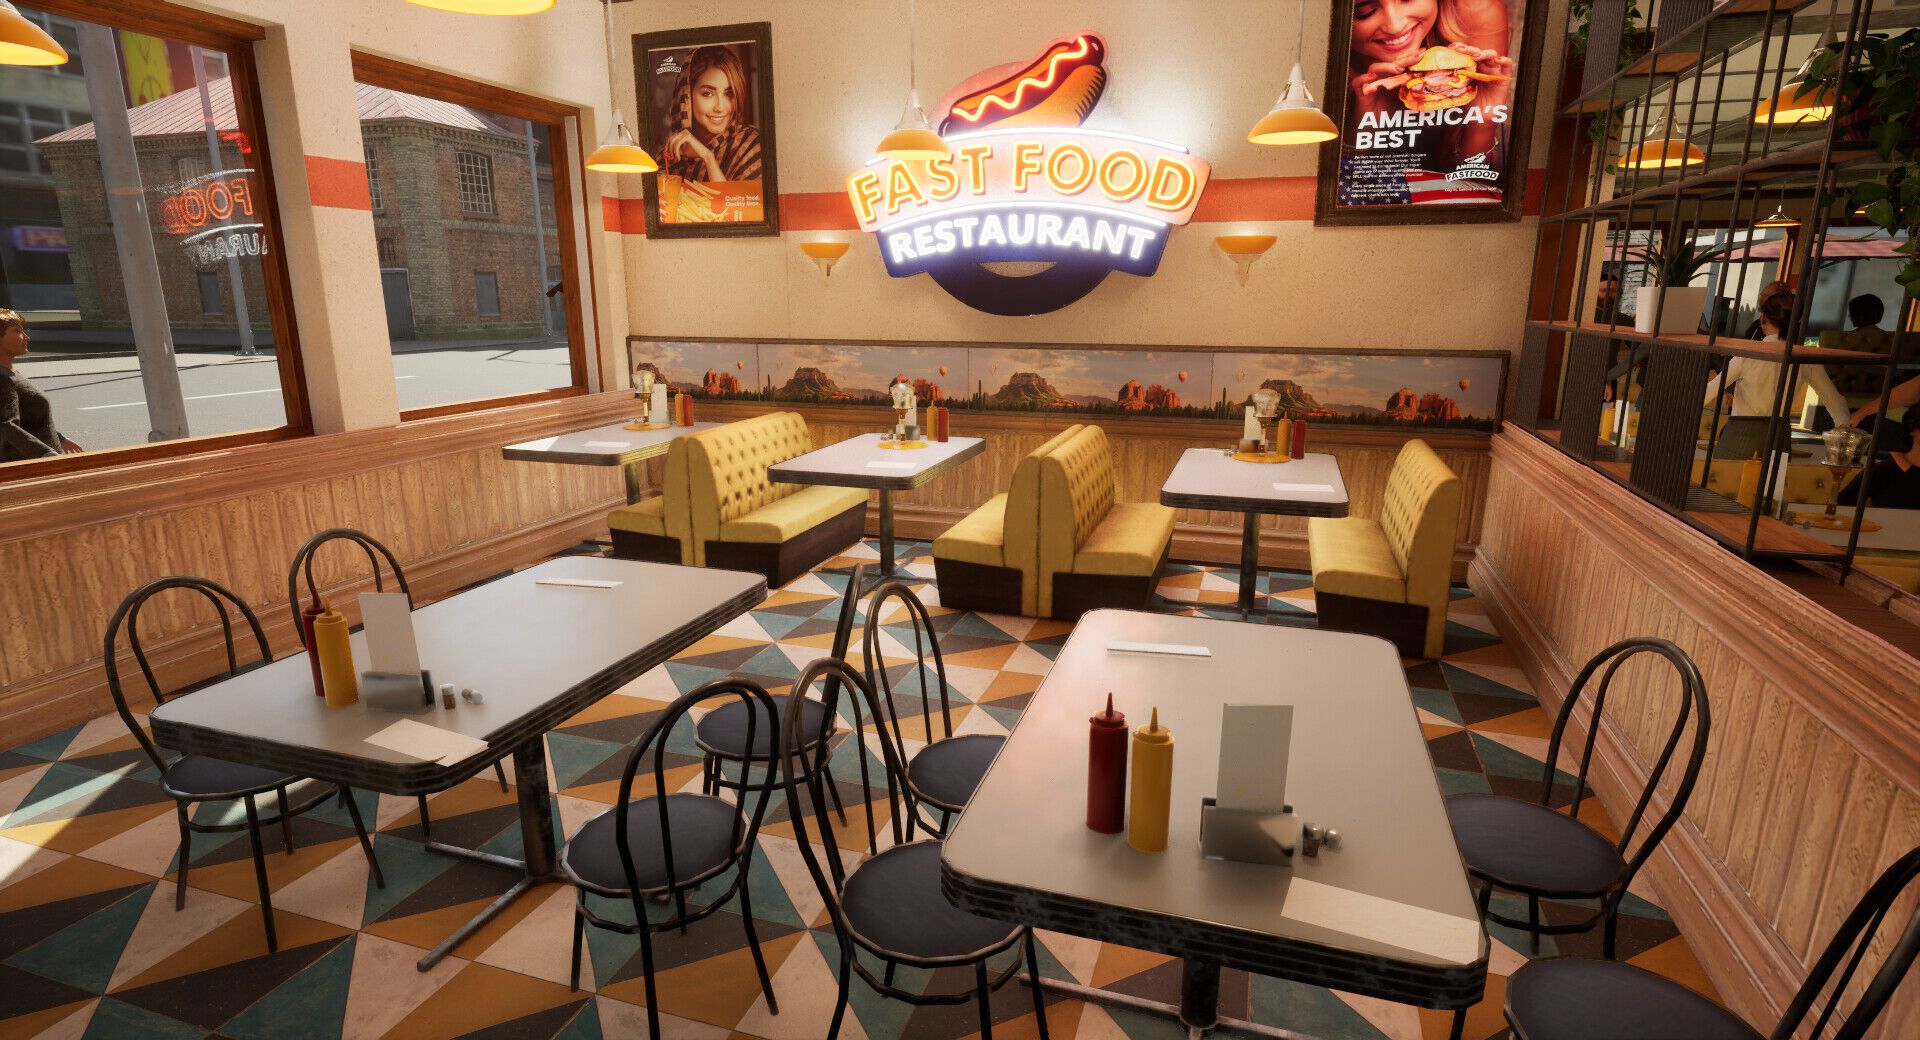 ファストフード店経営シミュ『Fast Food - Restaurant Simulator』Steamページ公開。店舗改装、商品発注、衛生管理……すべてをこなし、廃墟から業界一のレストランを目指せ